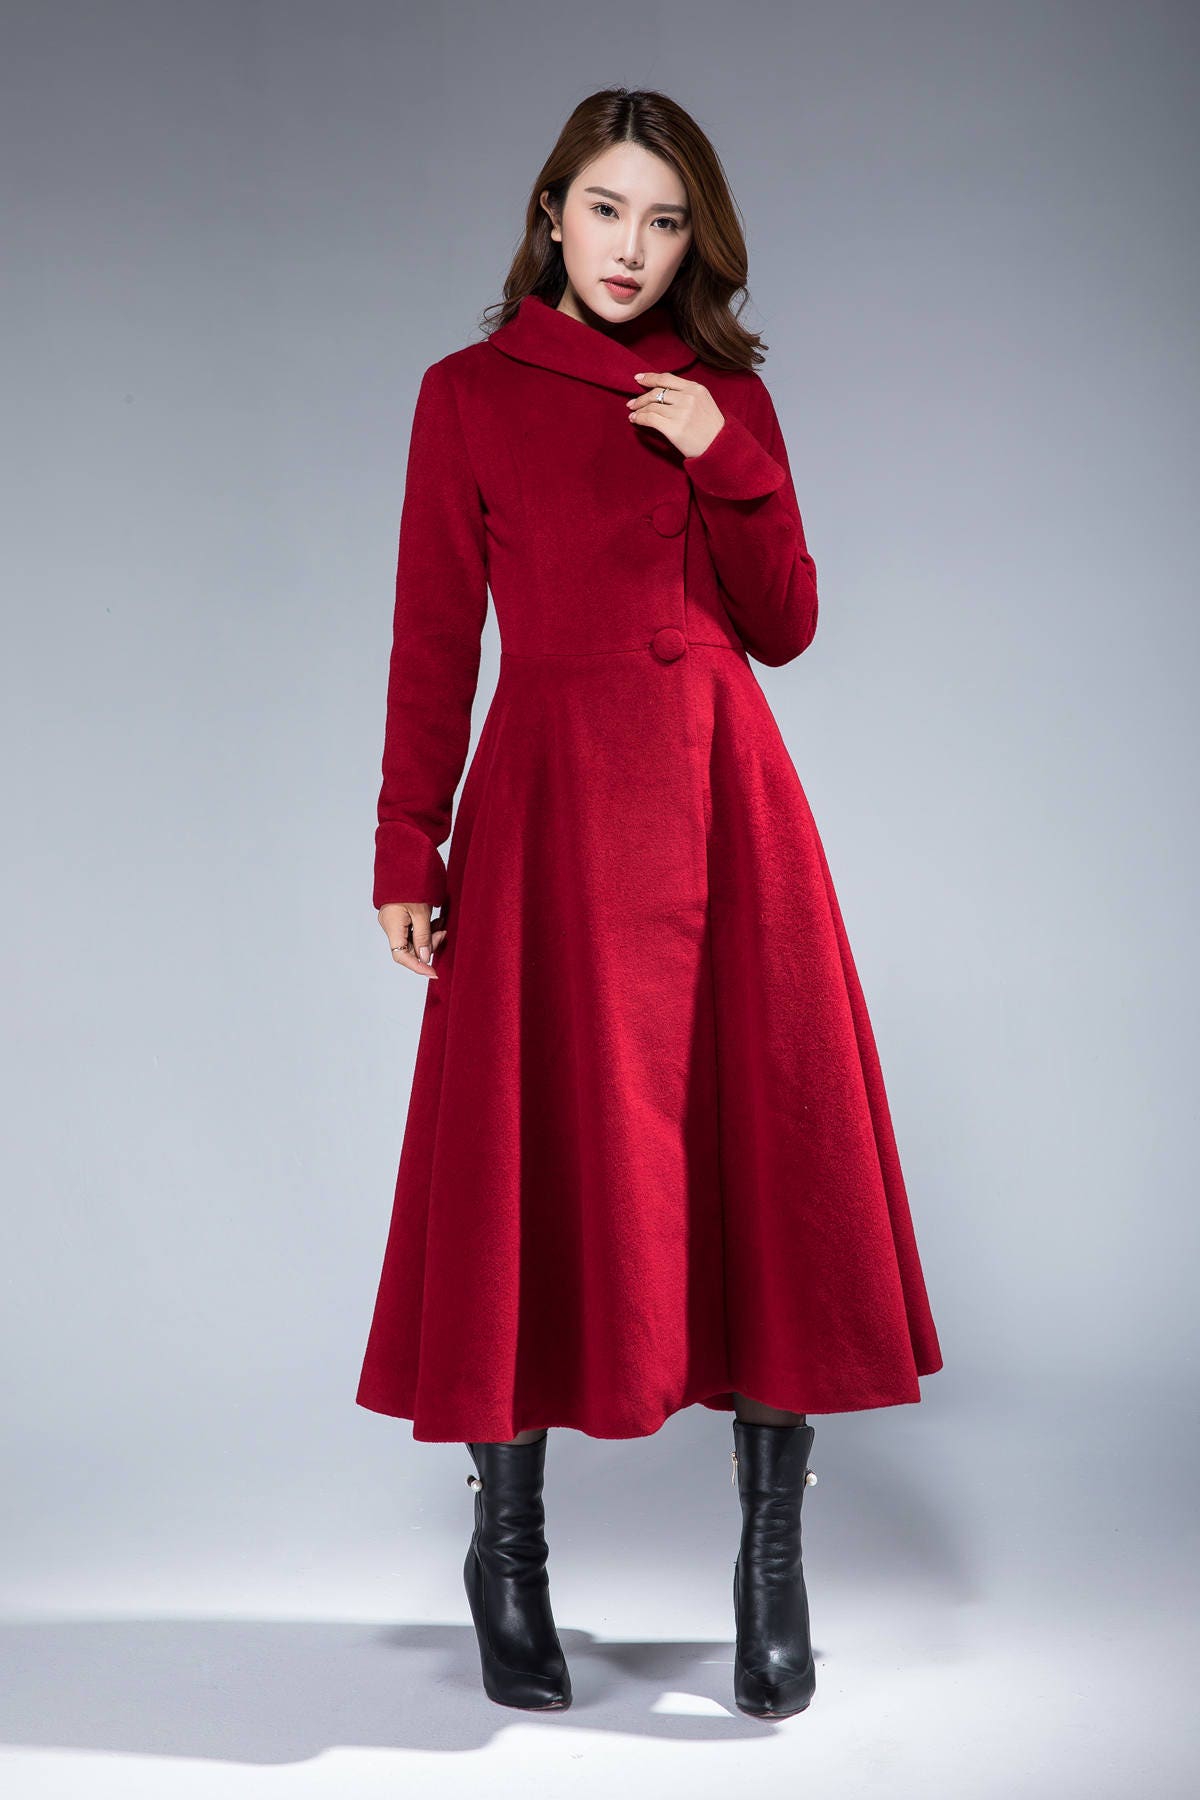 Warm winter coat wool coat dress coat woman coat fit and | Etsy